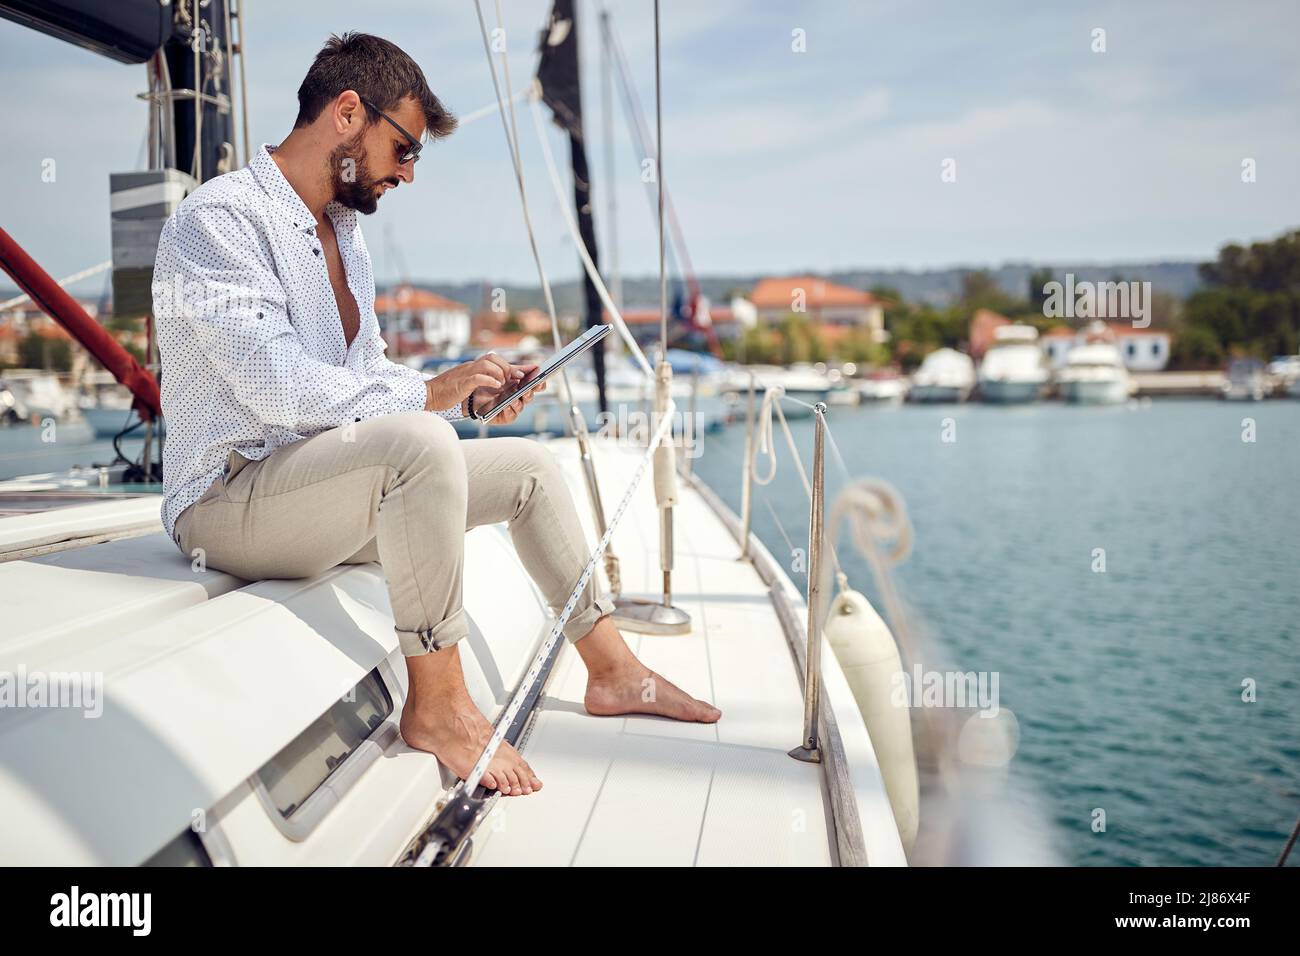 Un giovane uomo è seduto su uno yacht e utilizza un tablet mentre si guida attraverso il molo in una splendida giornata di sole sul mare. Estate, mare, vacanza Foto Stock